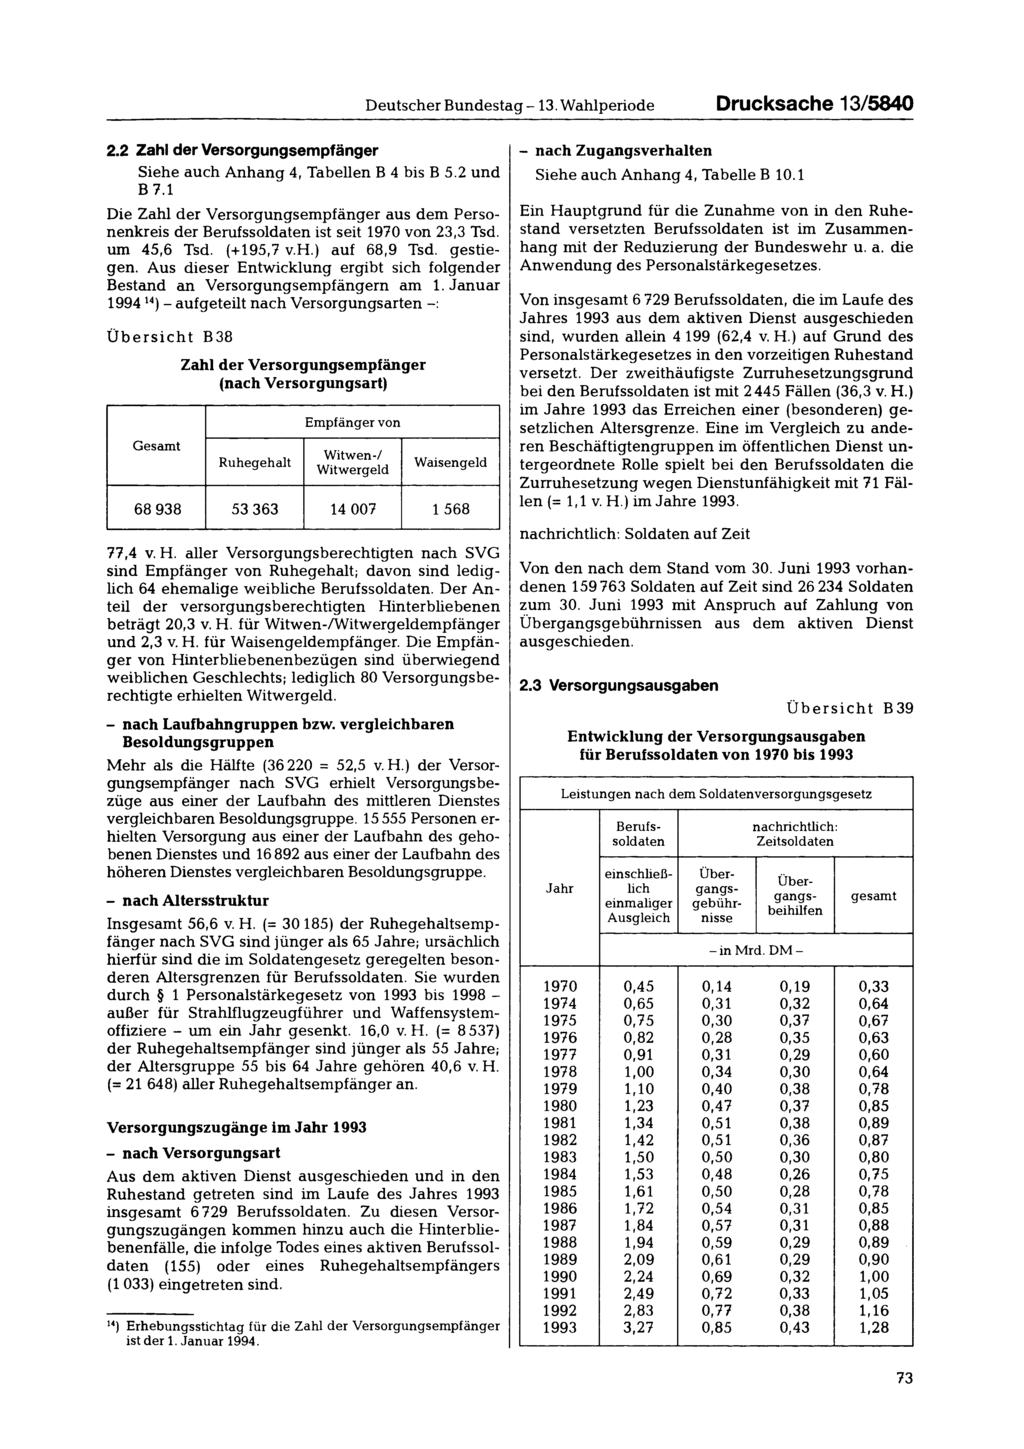 Deutscher Bundestag -13. Wahlperiode Drucksache 13/5840 2.2 Zahl der Versorgungsempfänger Siehe auch Anhang 4, Tabellen B 4 bis B 5.2 und B 7.